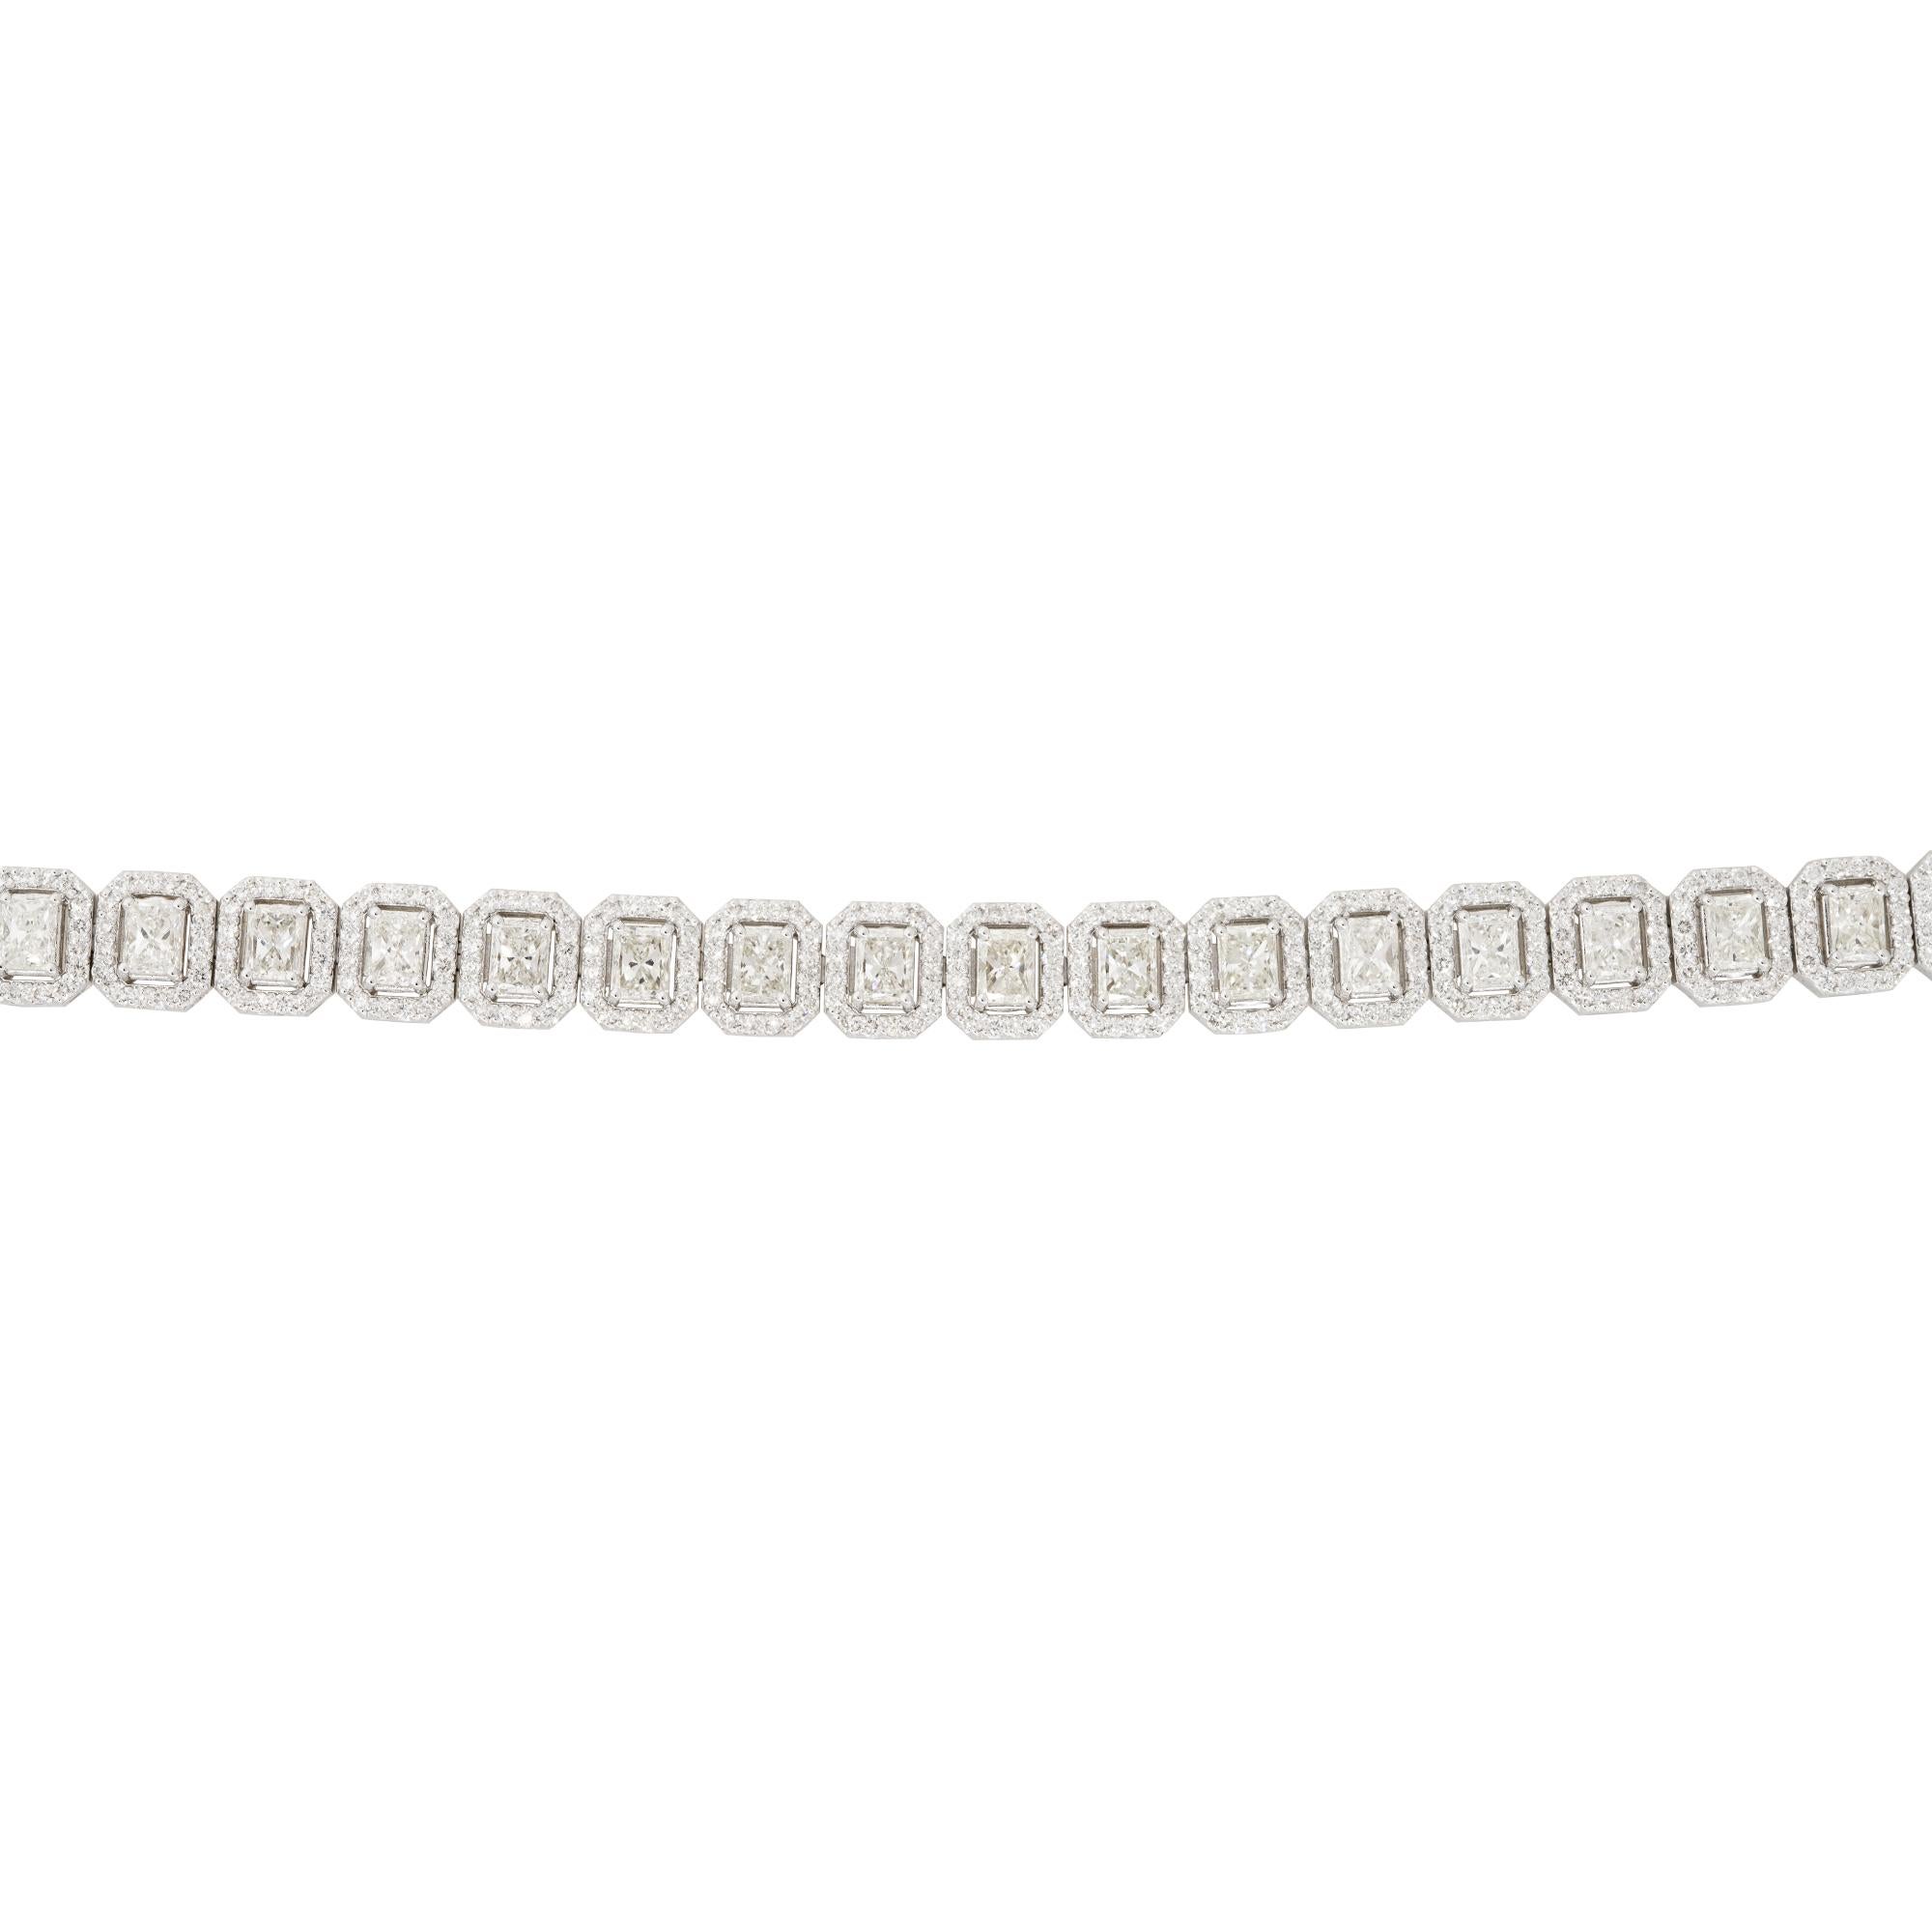 Bracelet tennis en or blanc 18k 11.3ctw Radiant Cut Diamond Halo

MATERIAL : Or blanc 18k
Détails des diamants : Environ 7,46ctw de diamants de taille Radiant et environ 3,84ctw de diamants ronds brillants sertis dans chaque halo. Les diamants ont